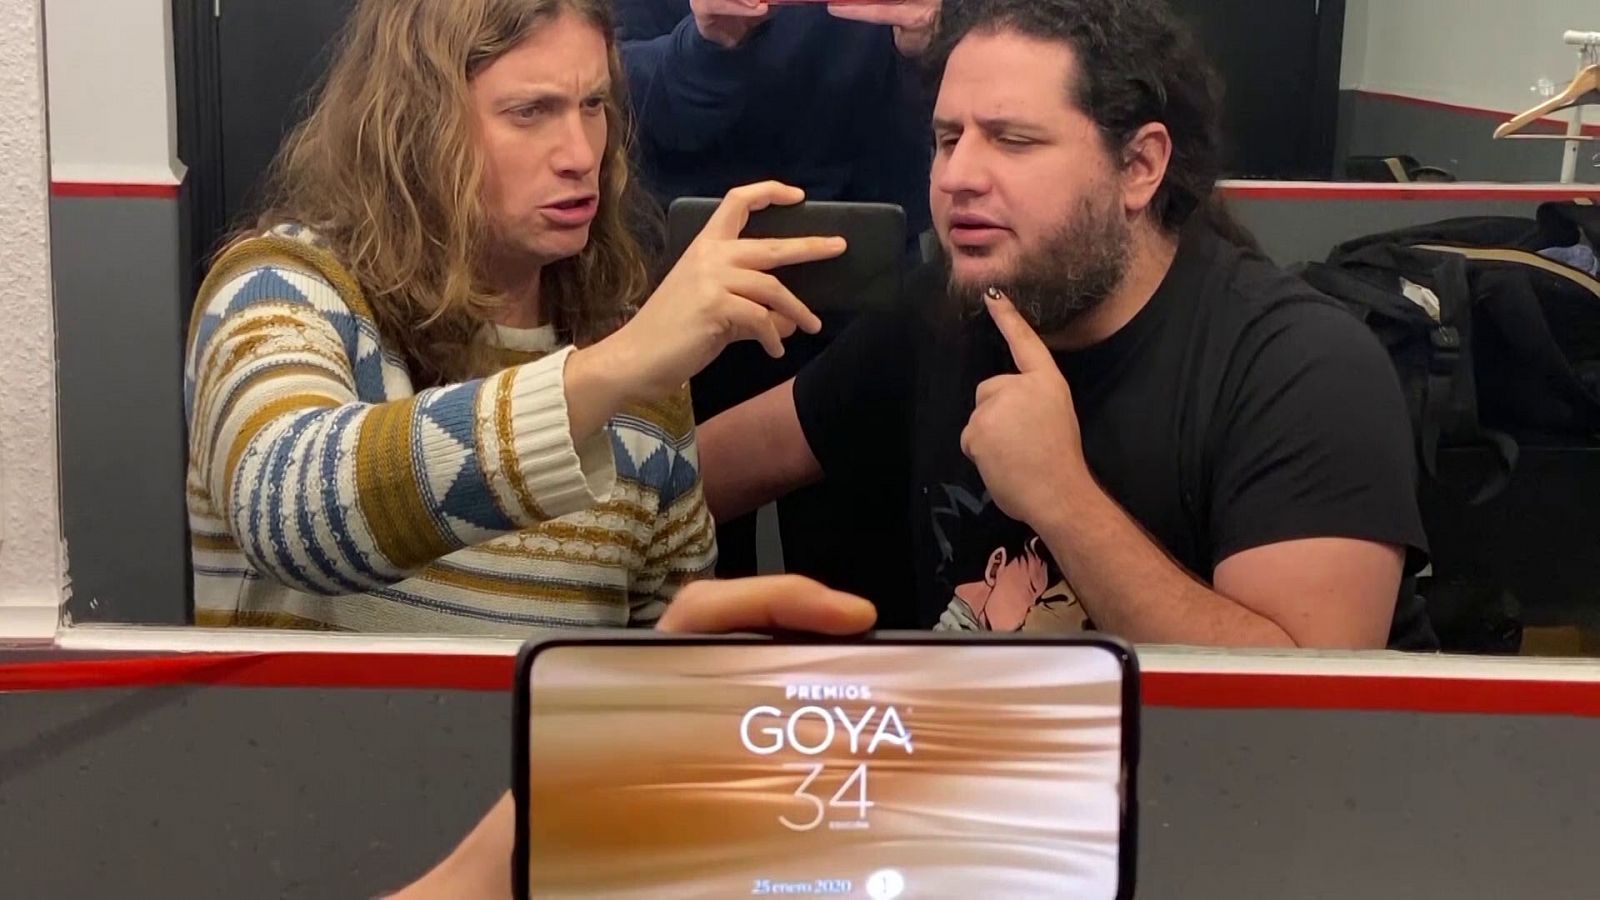 Los Goya | Llegan los Premios Goya más gamberros con Grison, Jaime Caravaca y Álex Pinacho: los "gayos golfxs"